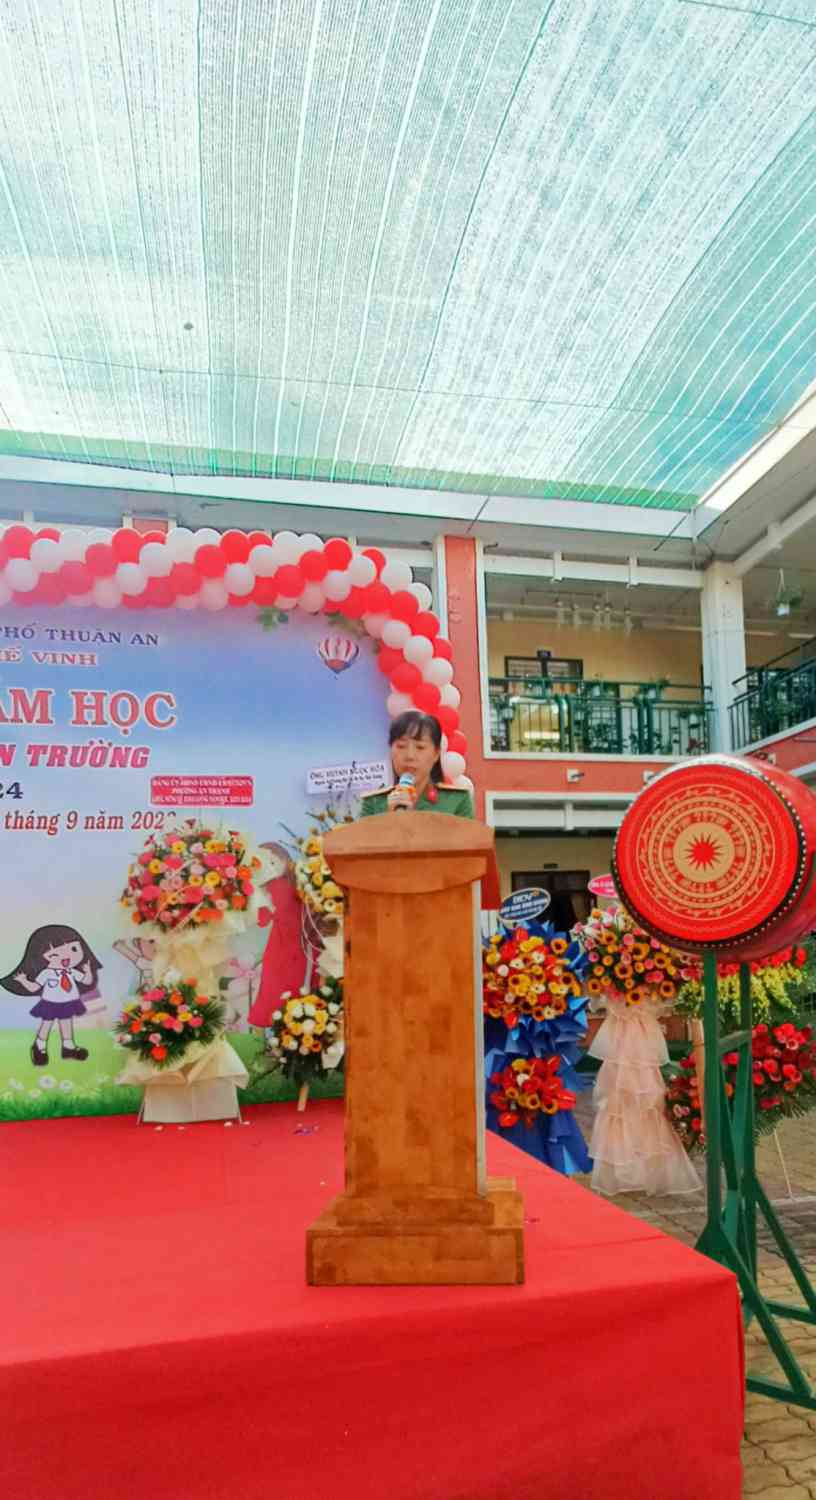 Bà Huỳnh Ngọc Loan - Phó trưởng Công an TP.Thuận An đọc thư chủ tịch nước trước thềm năm học mới